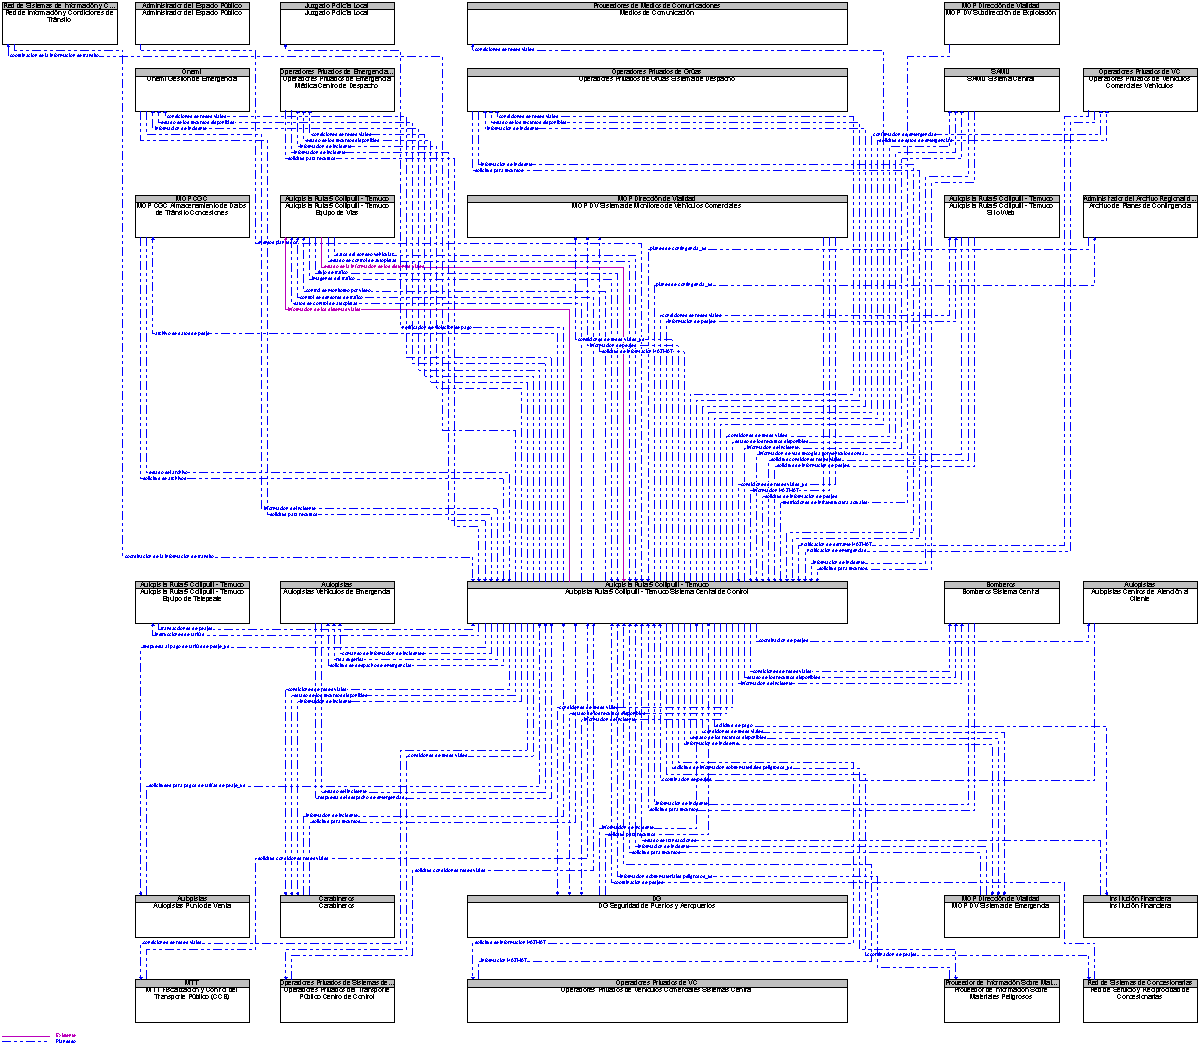 Diagrama Del Contexto por Autopista Ruta 5 Collipulli - Temuco Sistema Central de Control